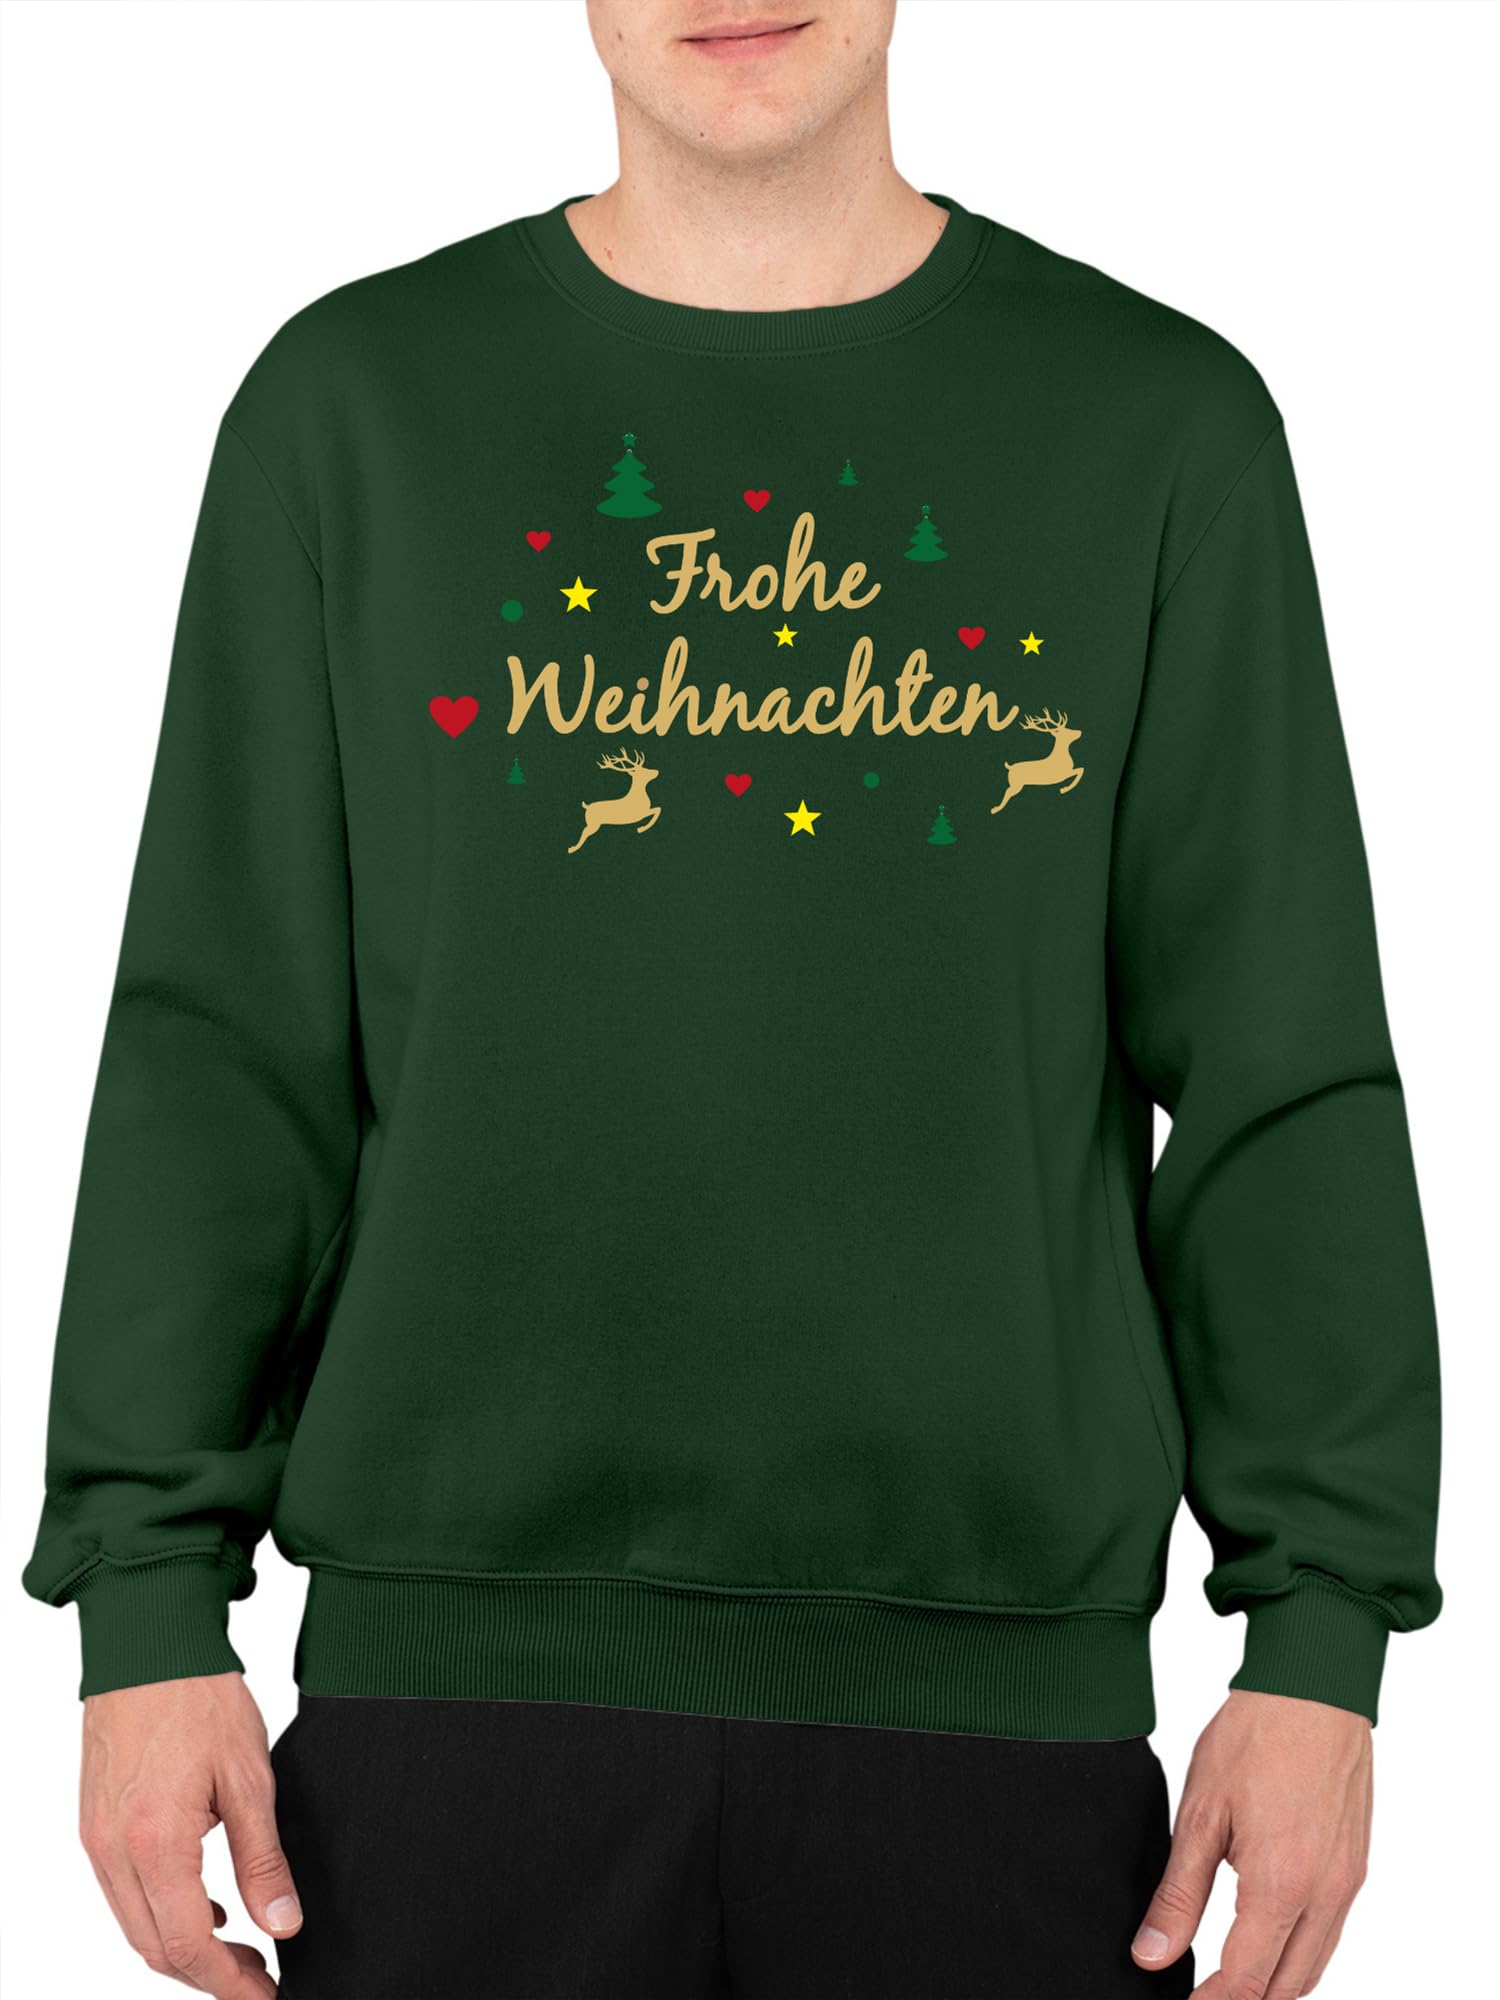 Shirt-Panda Herren Weihnachten Sweatshirt - Frohe Weihnachten Rentier - Christmas Sweater - Pullover Heiligabend - Dunkelgrün L